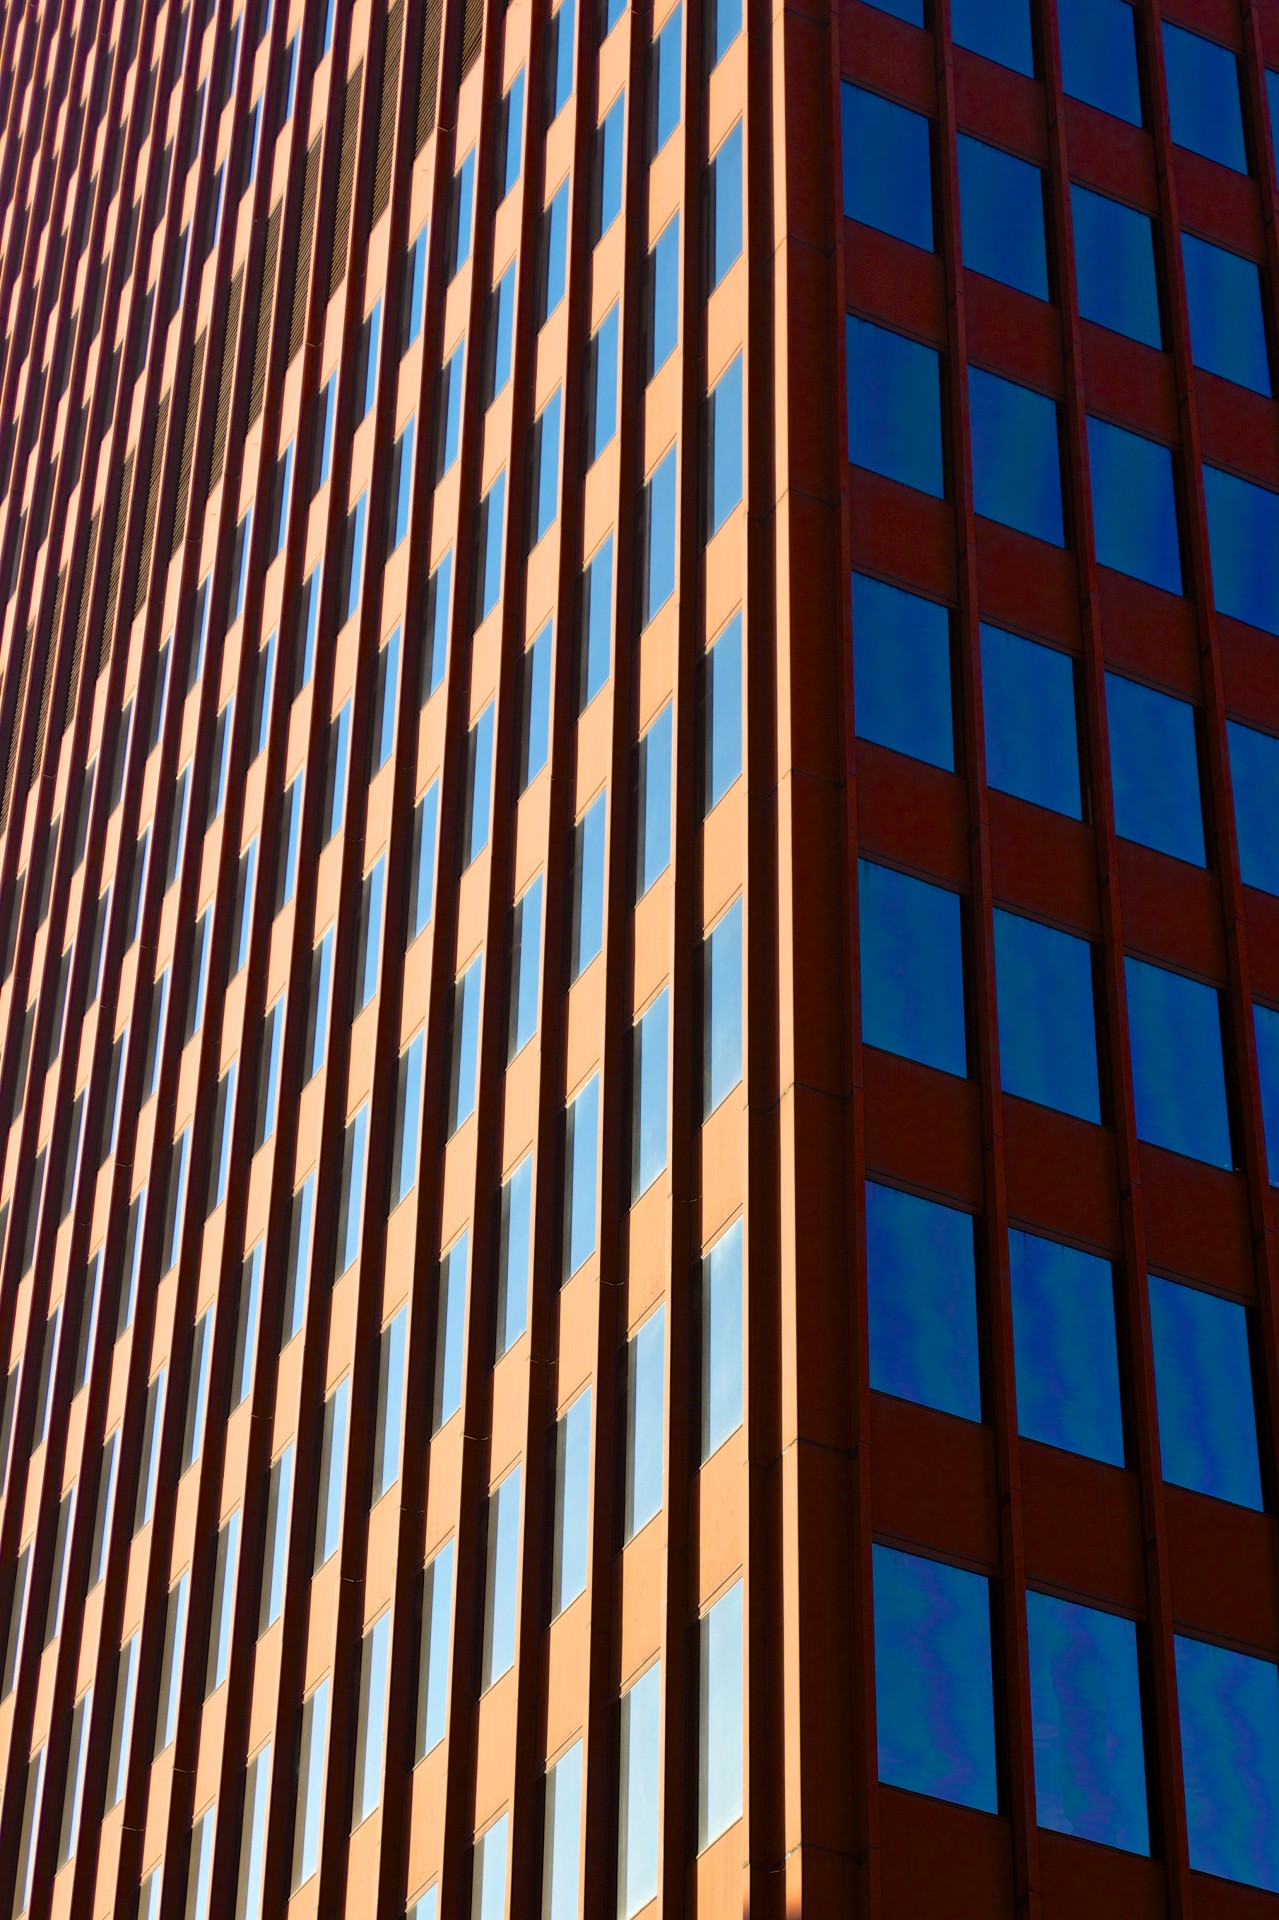 Two Faces Of A Skyscraper